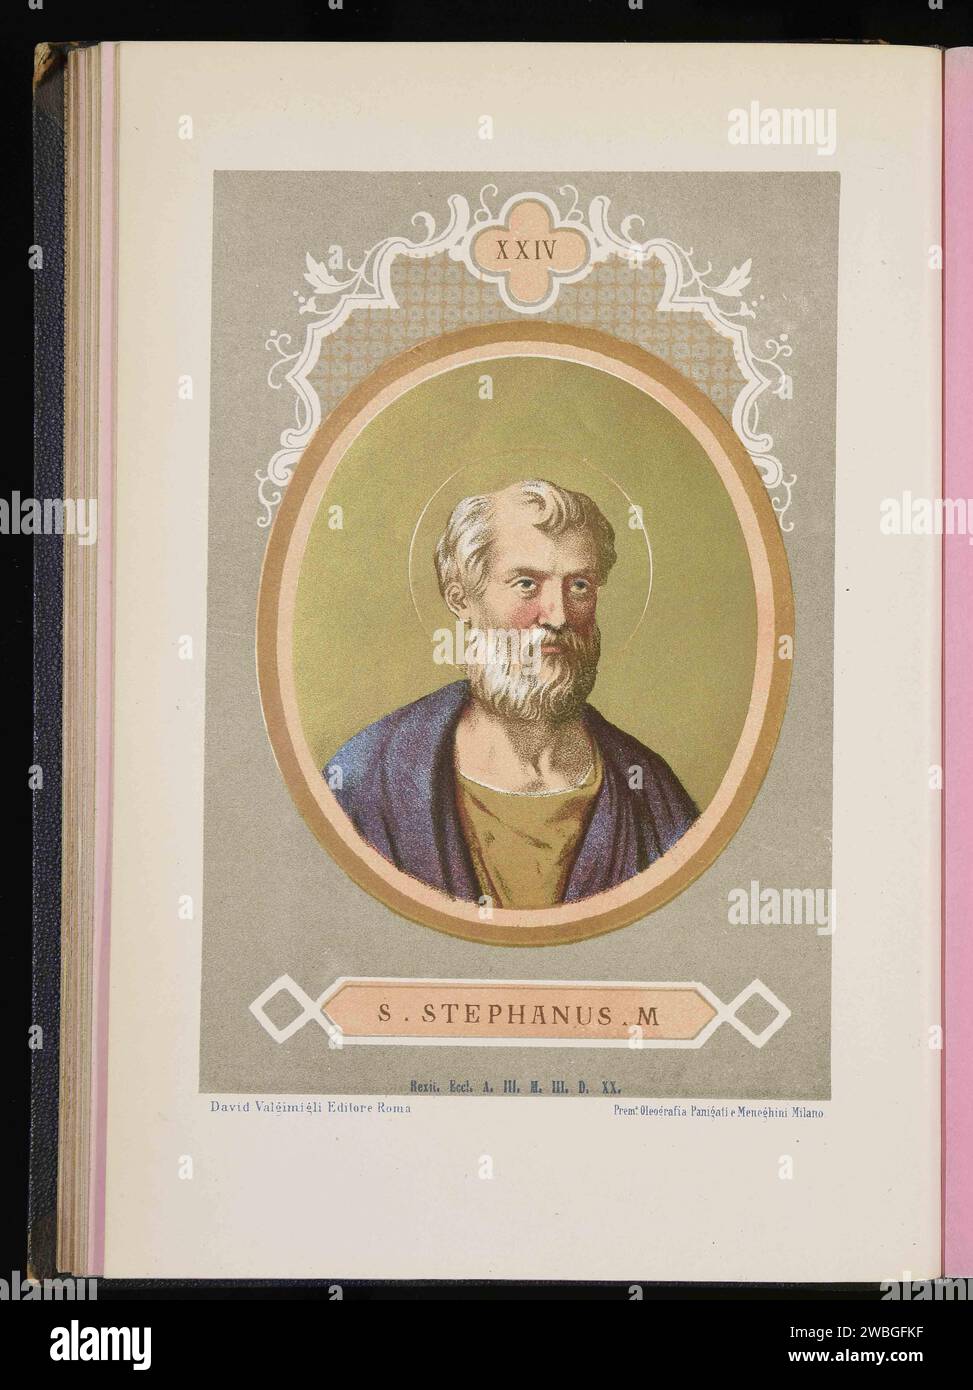 Une gravure de 1879 du pape Étienne Ier qui était pontife de AD254-AD257. Il était le 23e pape. Il a été martyrisé en étant décapité par l'homme de l'empereur Valérian alors qu'il était assis sur son trône. Banque D'Images